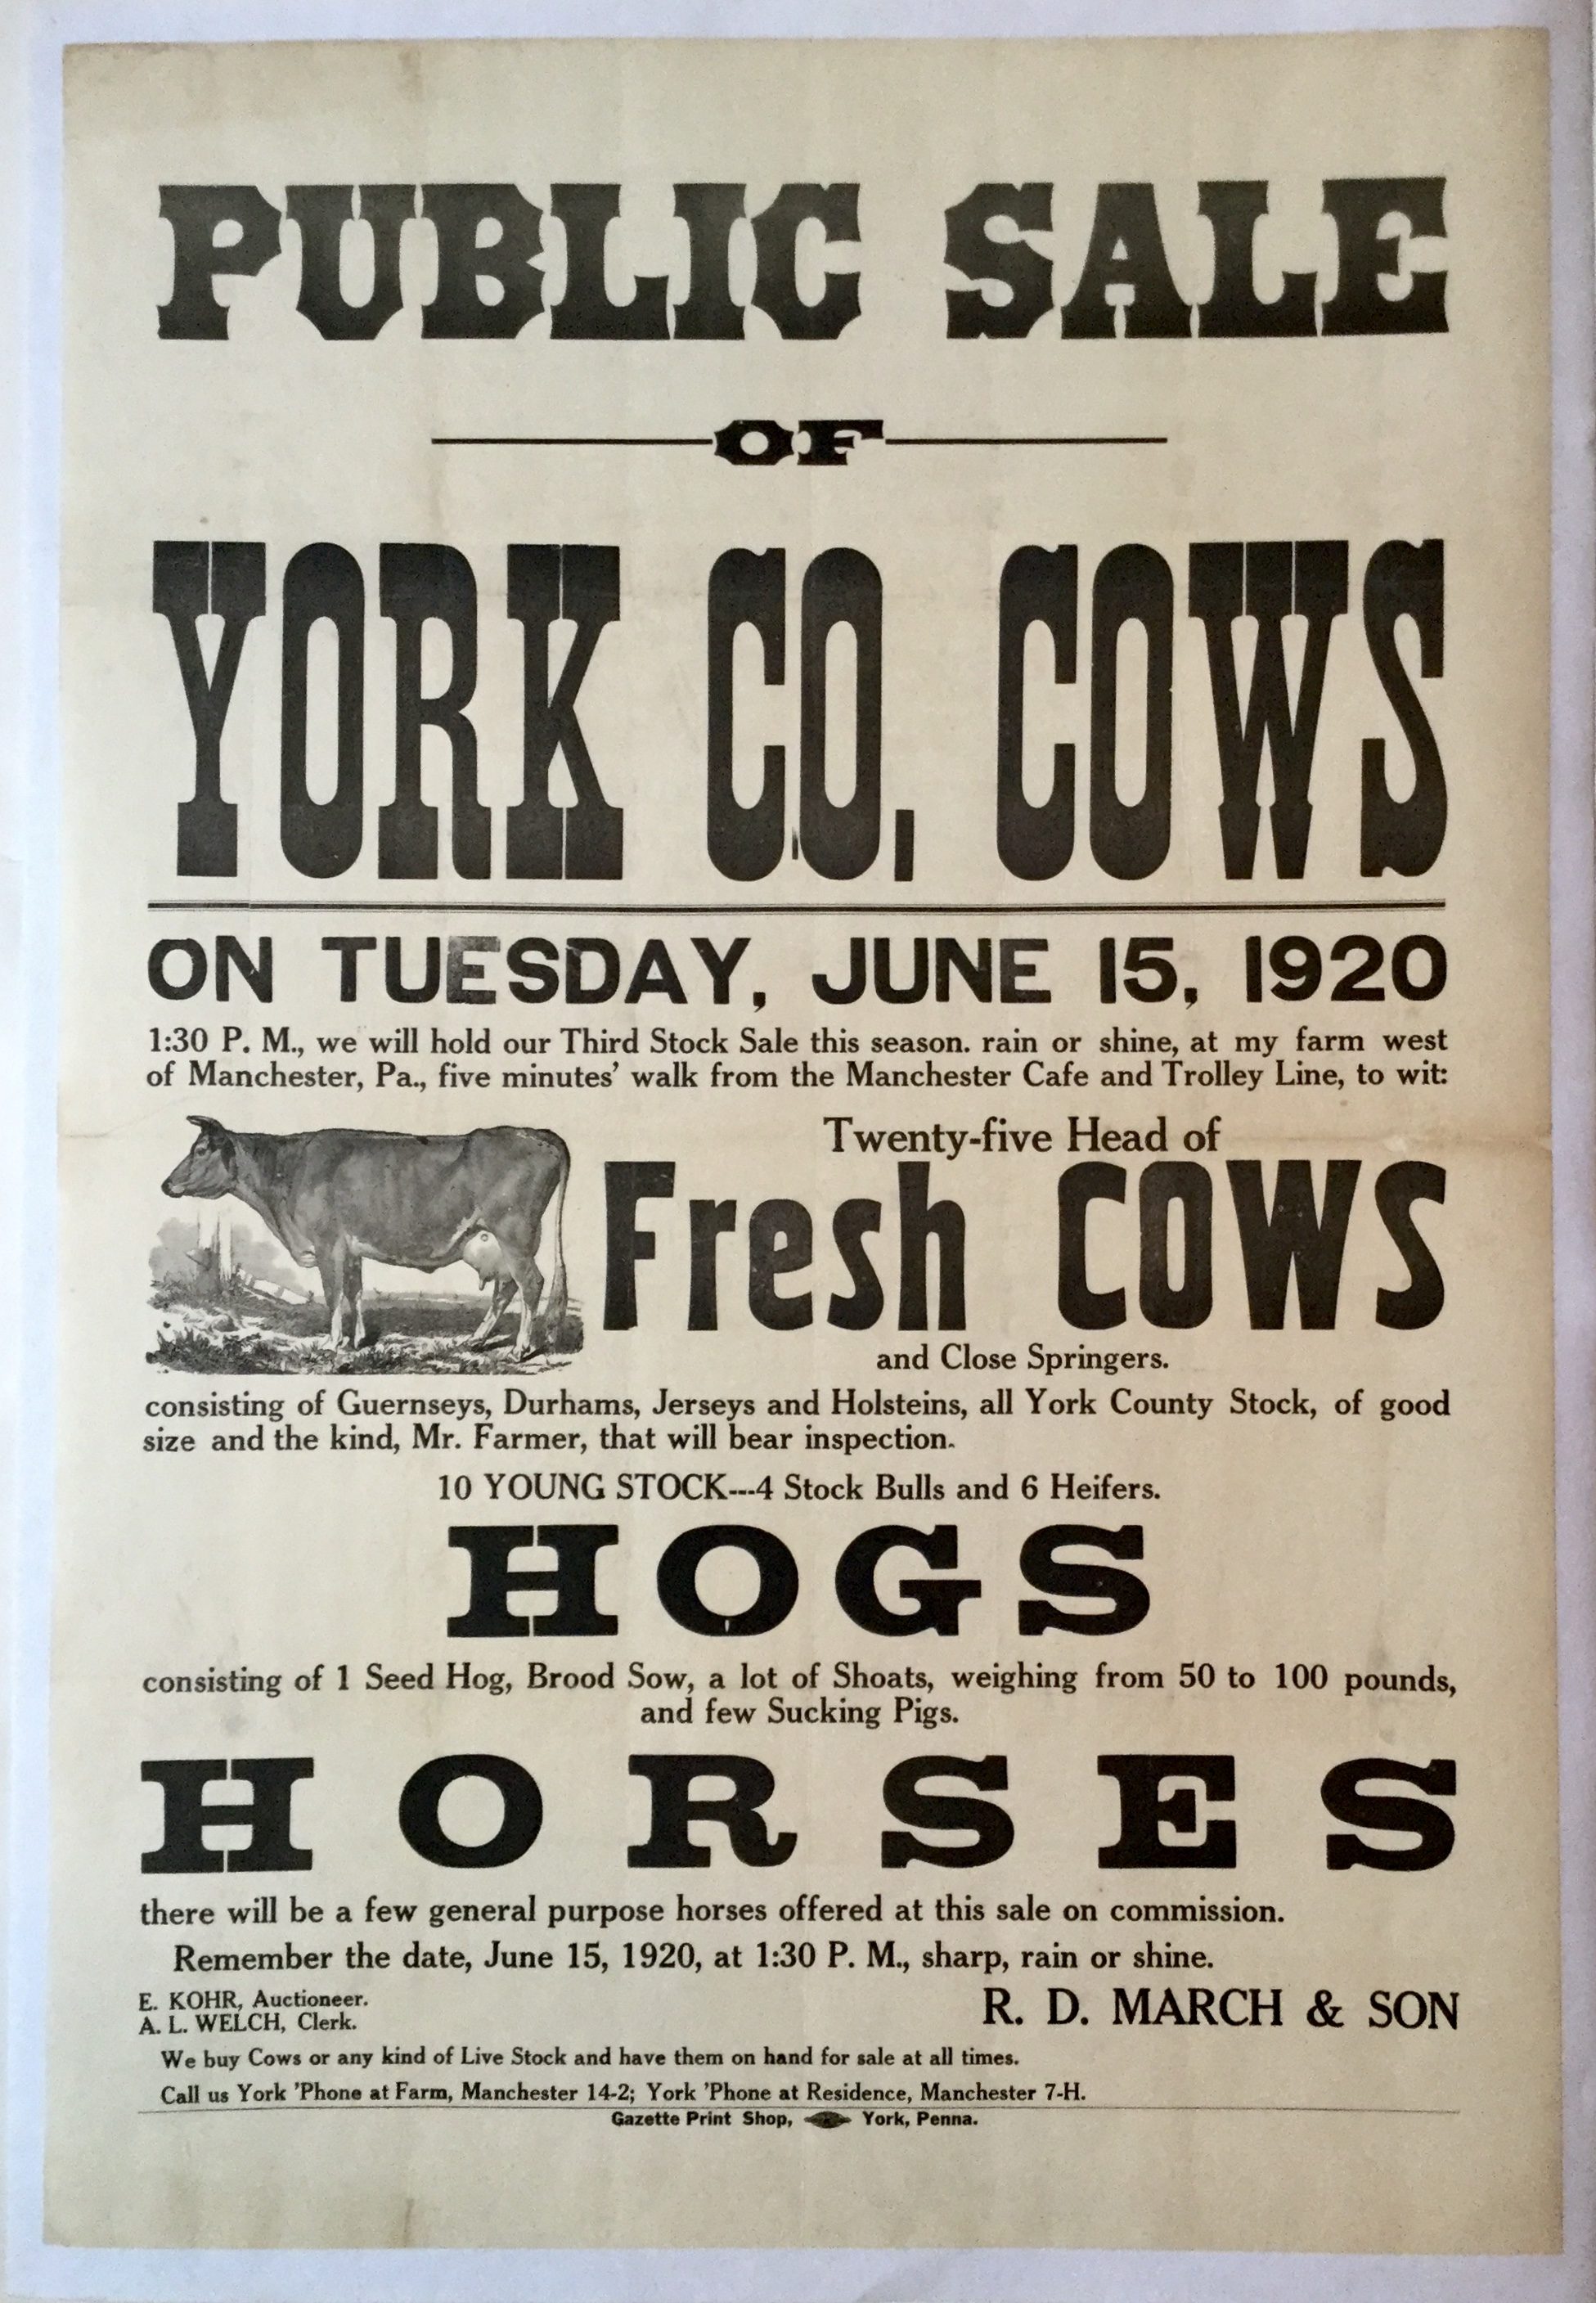 YK0809 PUBLIC SALE YORK CO. COWS - HOGS - HORSES